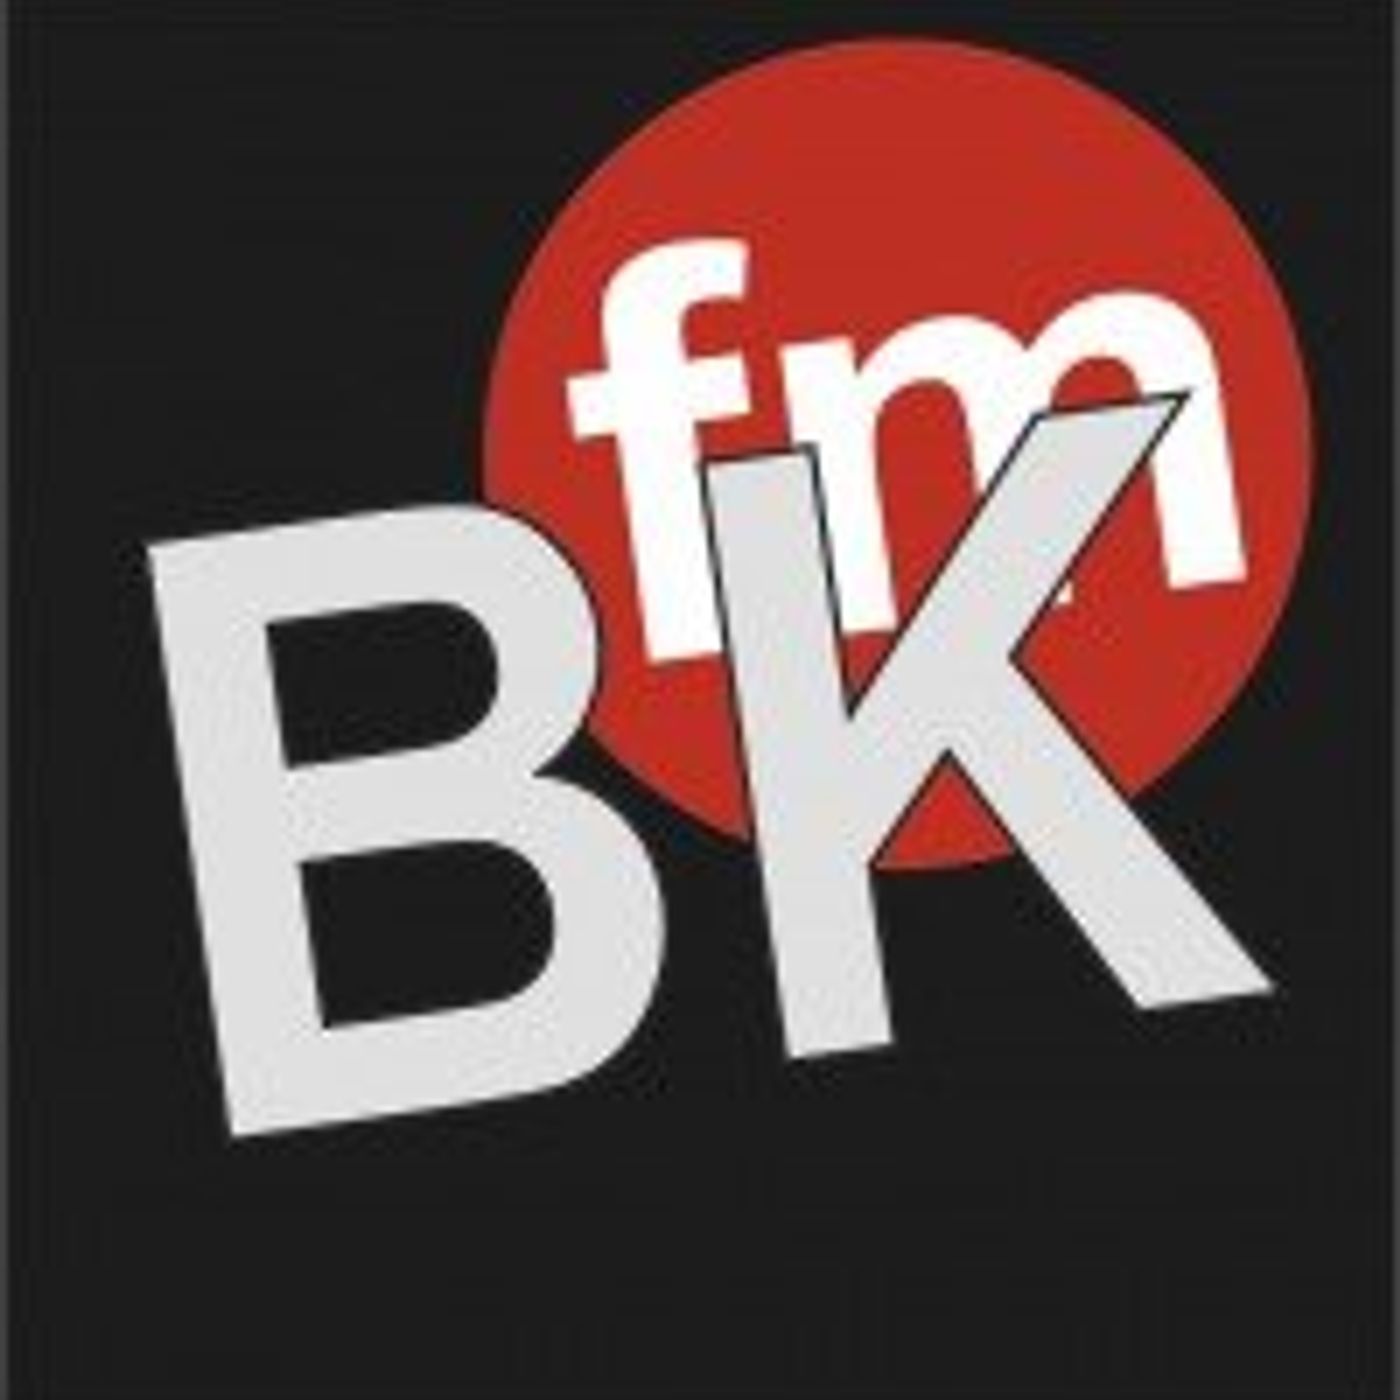 BKFM Production